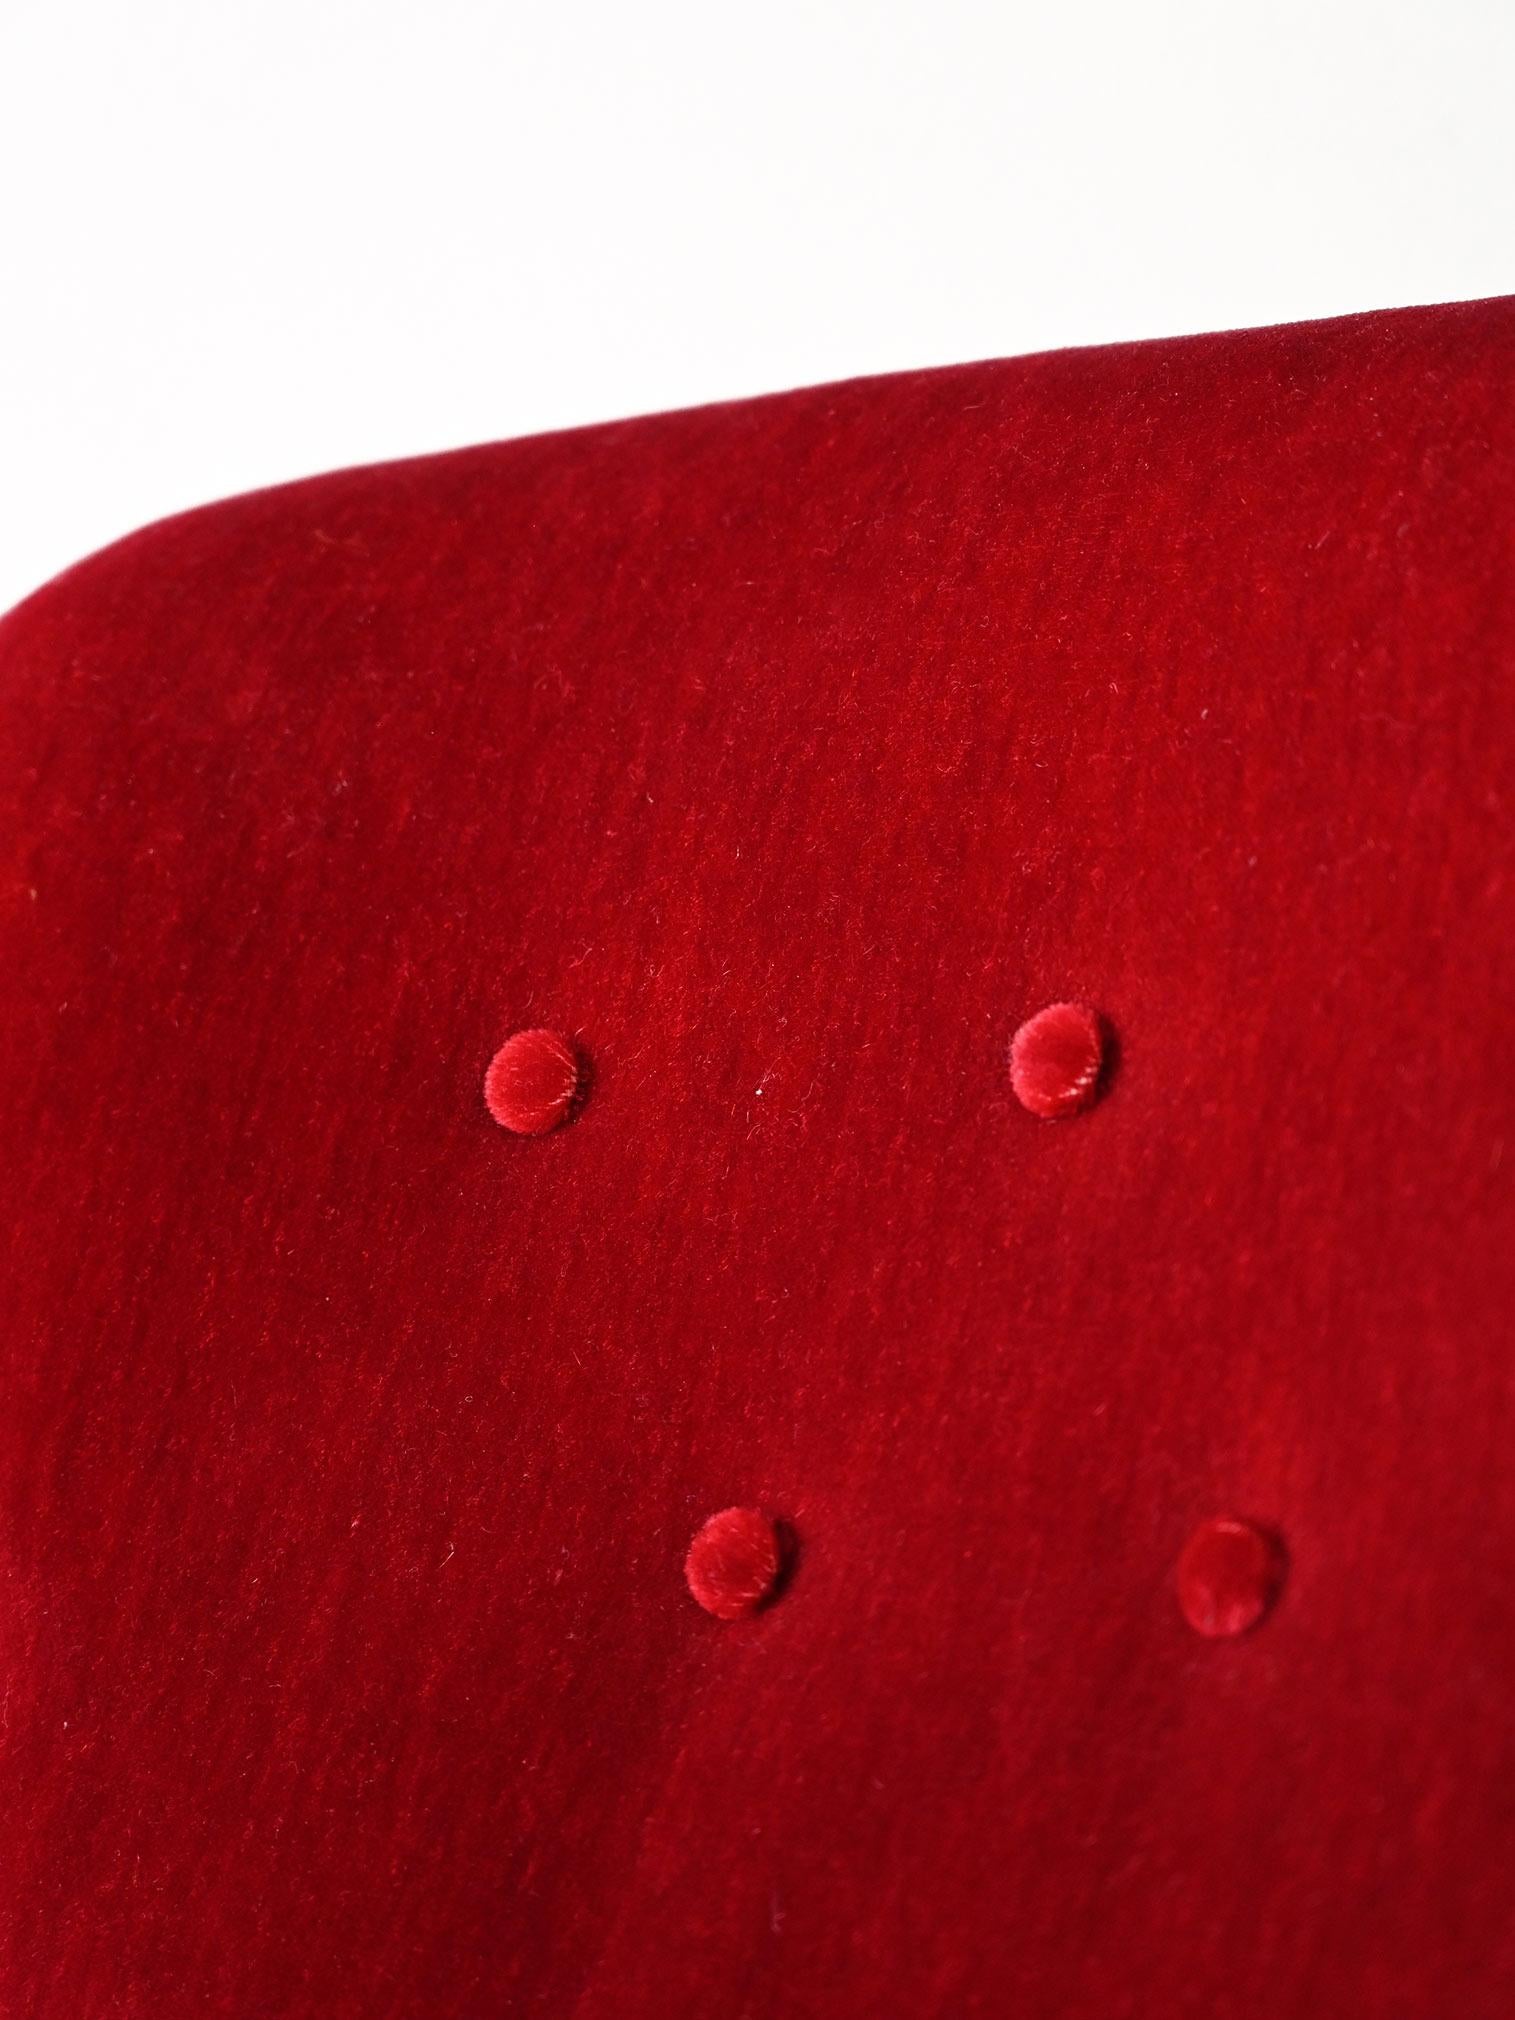 Fabric Red velvet armchair For Sale